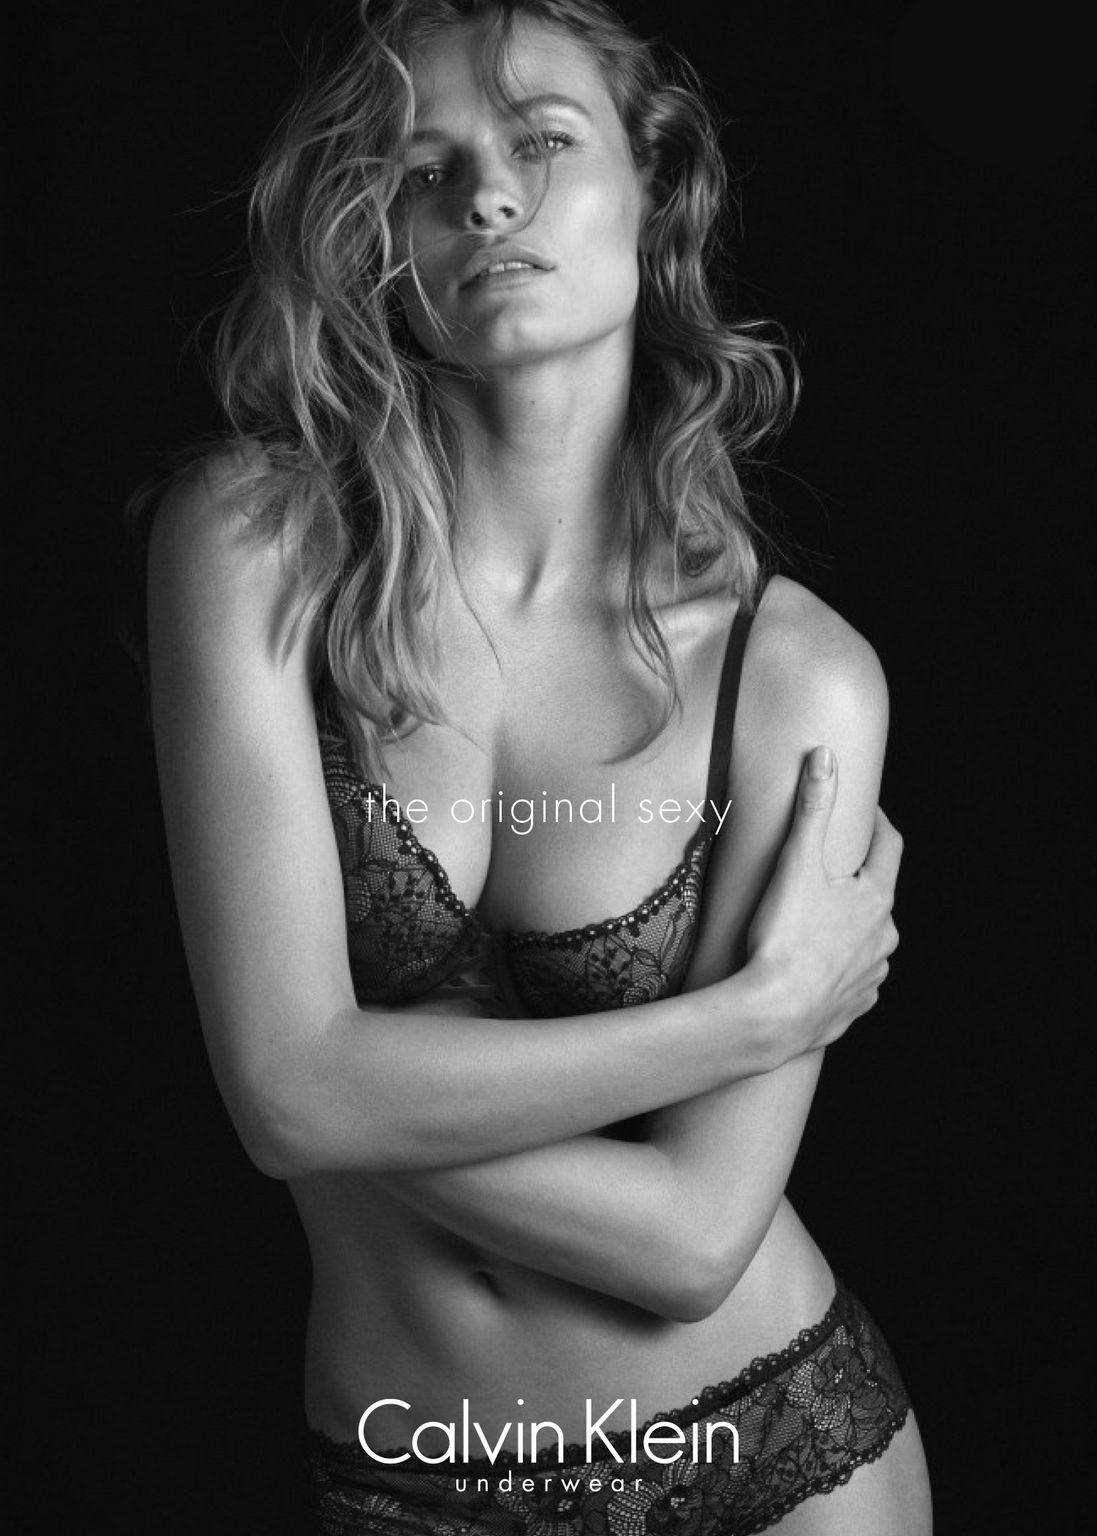 Edita Vilkeviciute Shoots For Calvin Klein The Original Sexy Underwear Fall Campaign